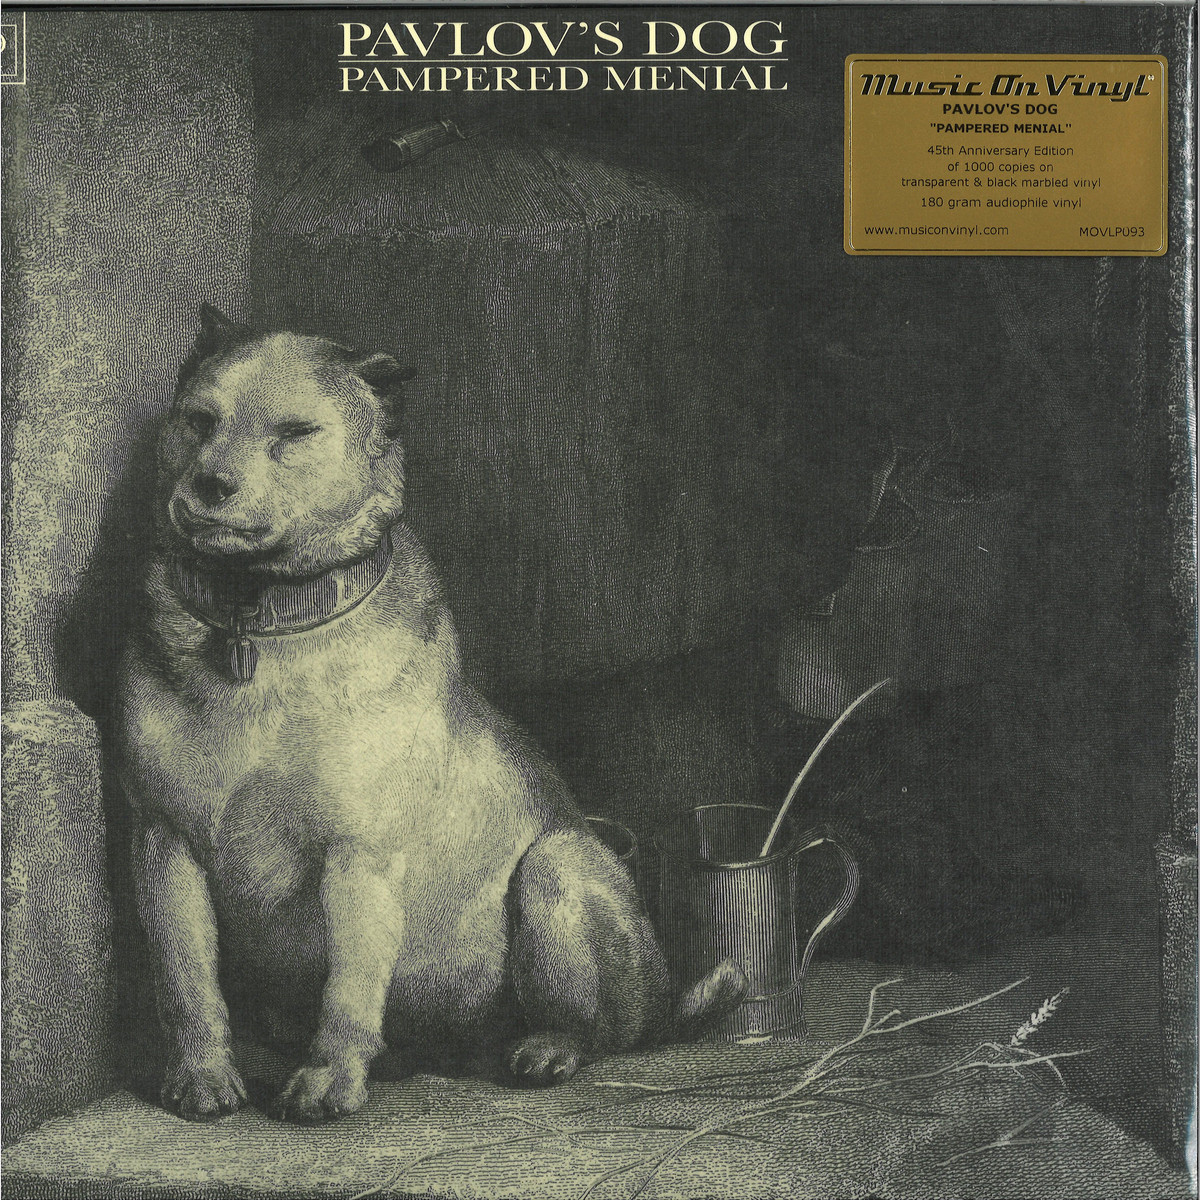 Читать вел павлов эрсус. Группа Pavlov’s Dog. Pavlov's Dog Дэвид сёркэмп. Pavlov's Dog "pampered menial". Pavlov's Dog дискография.